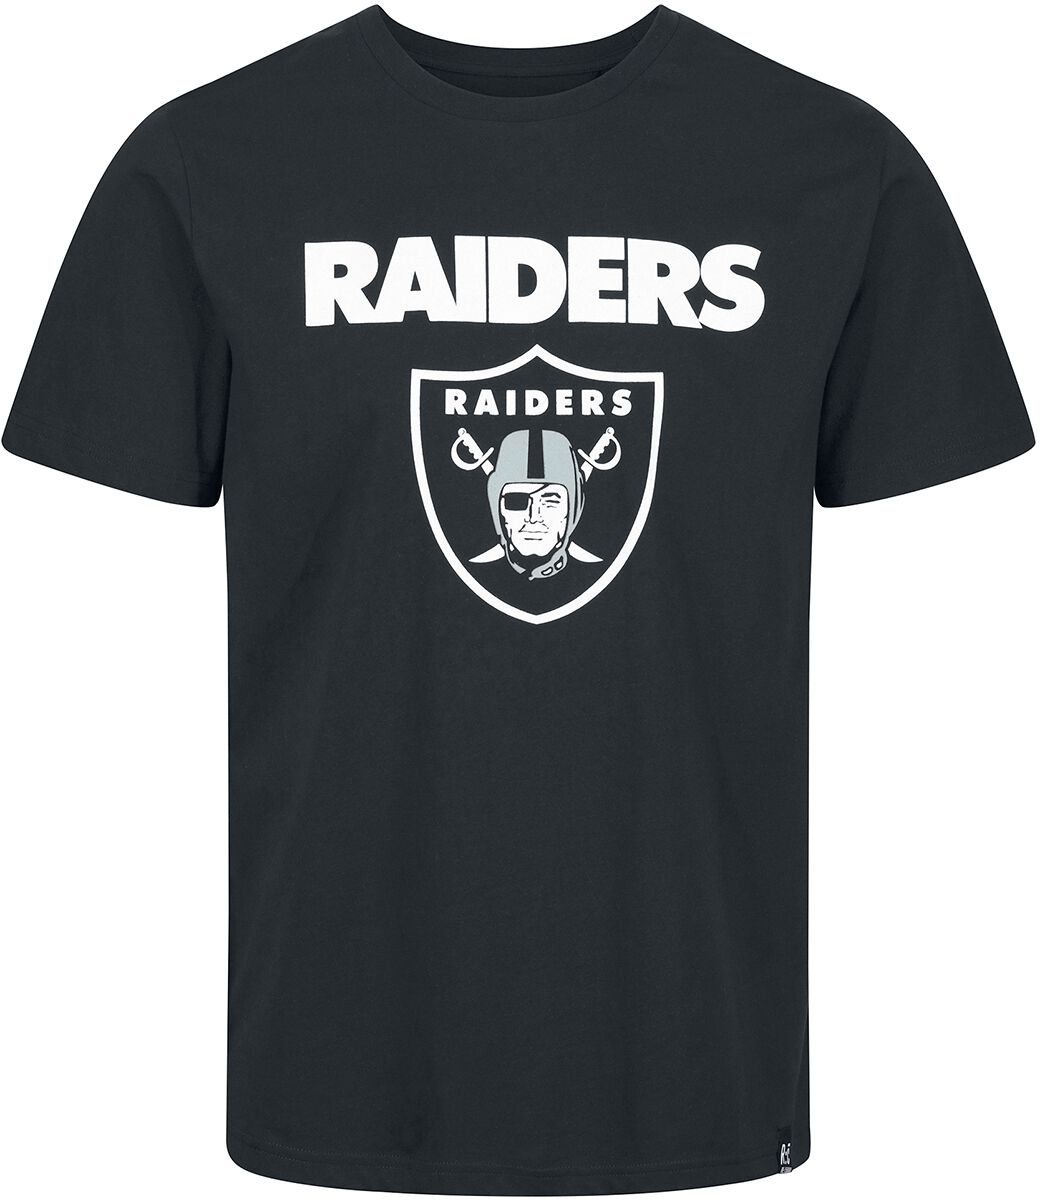 Camisetas oficiales Las Vegas Raiders , Raiders Camisetas, camisas,  camisetas sin mangas